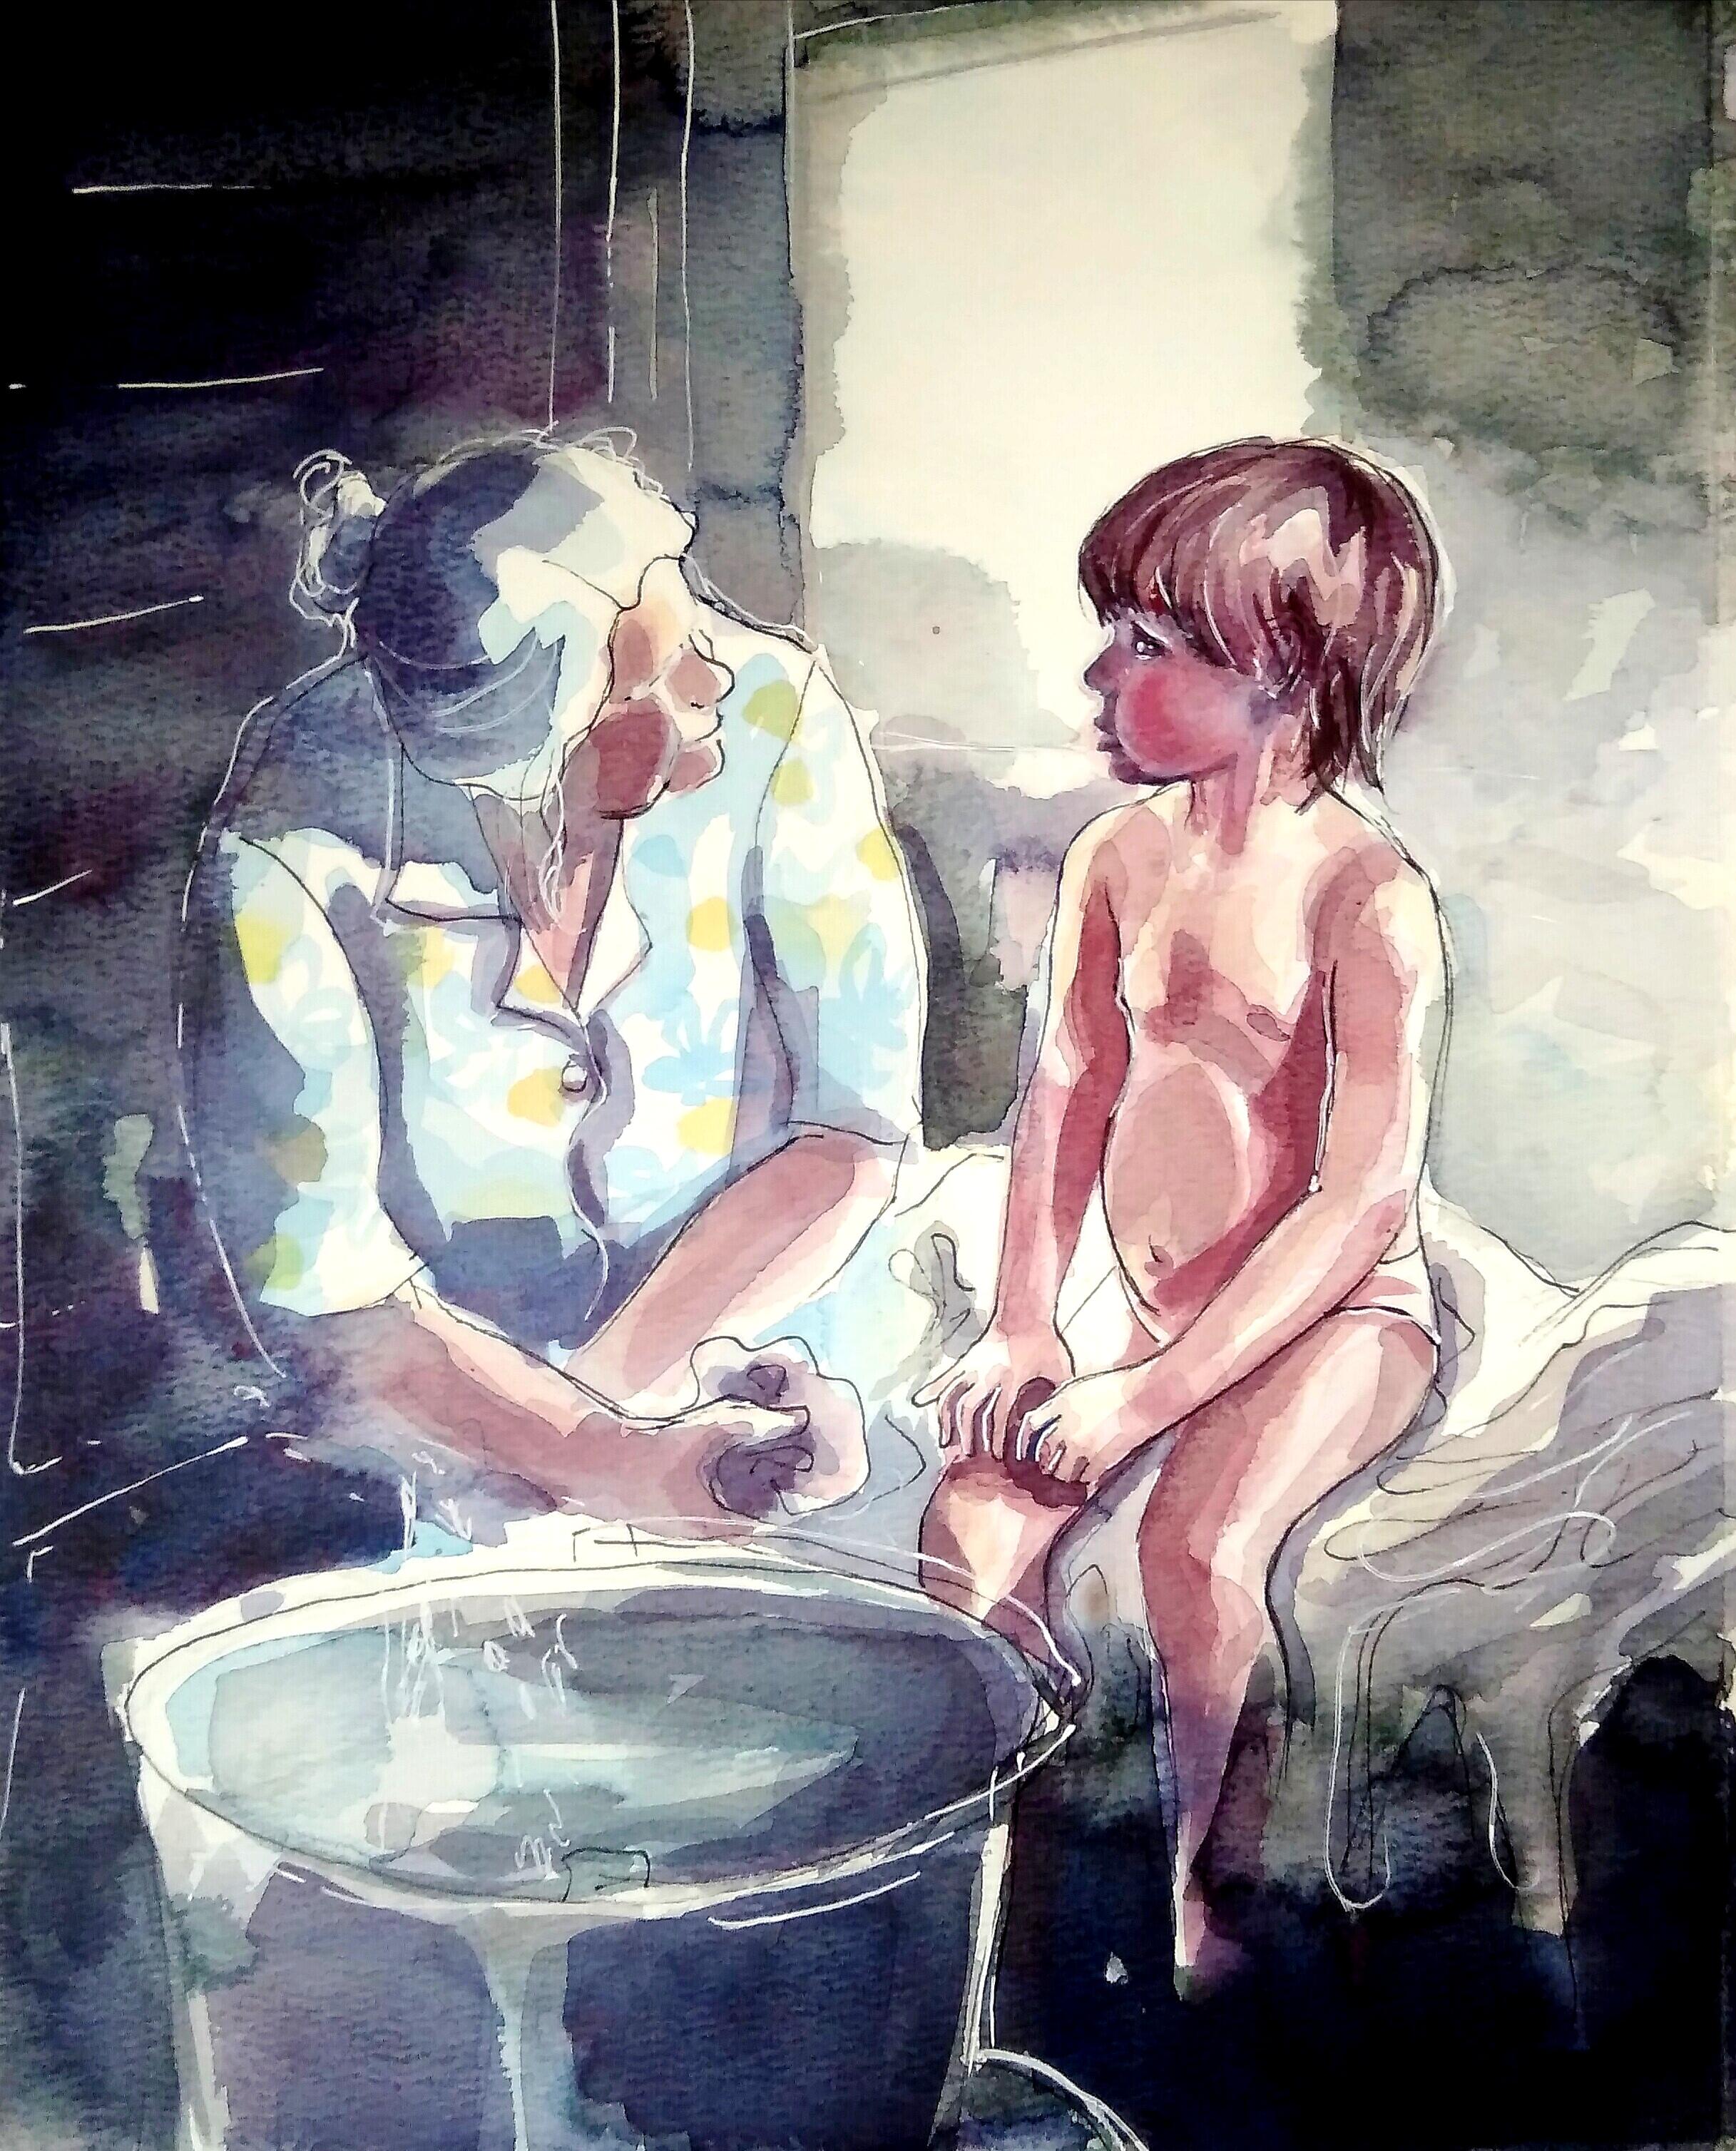 Bathhouse - Painting by Olga Kasatkina